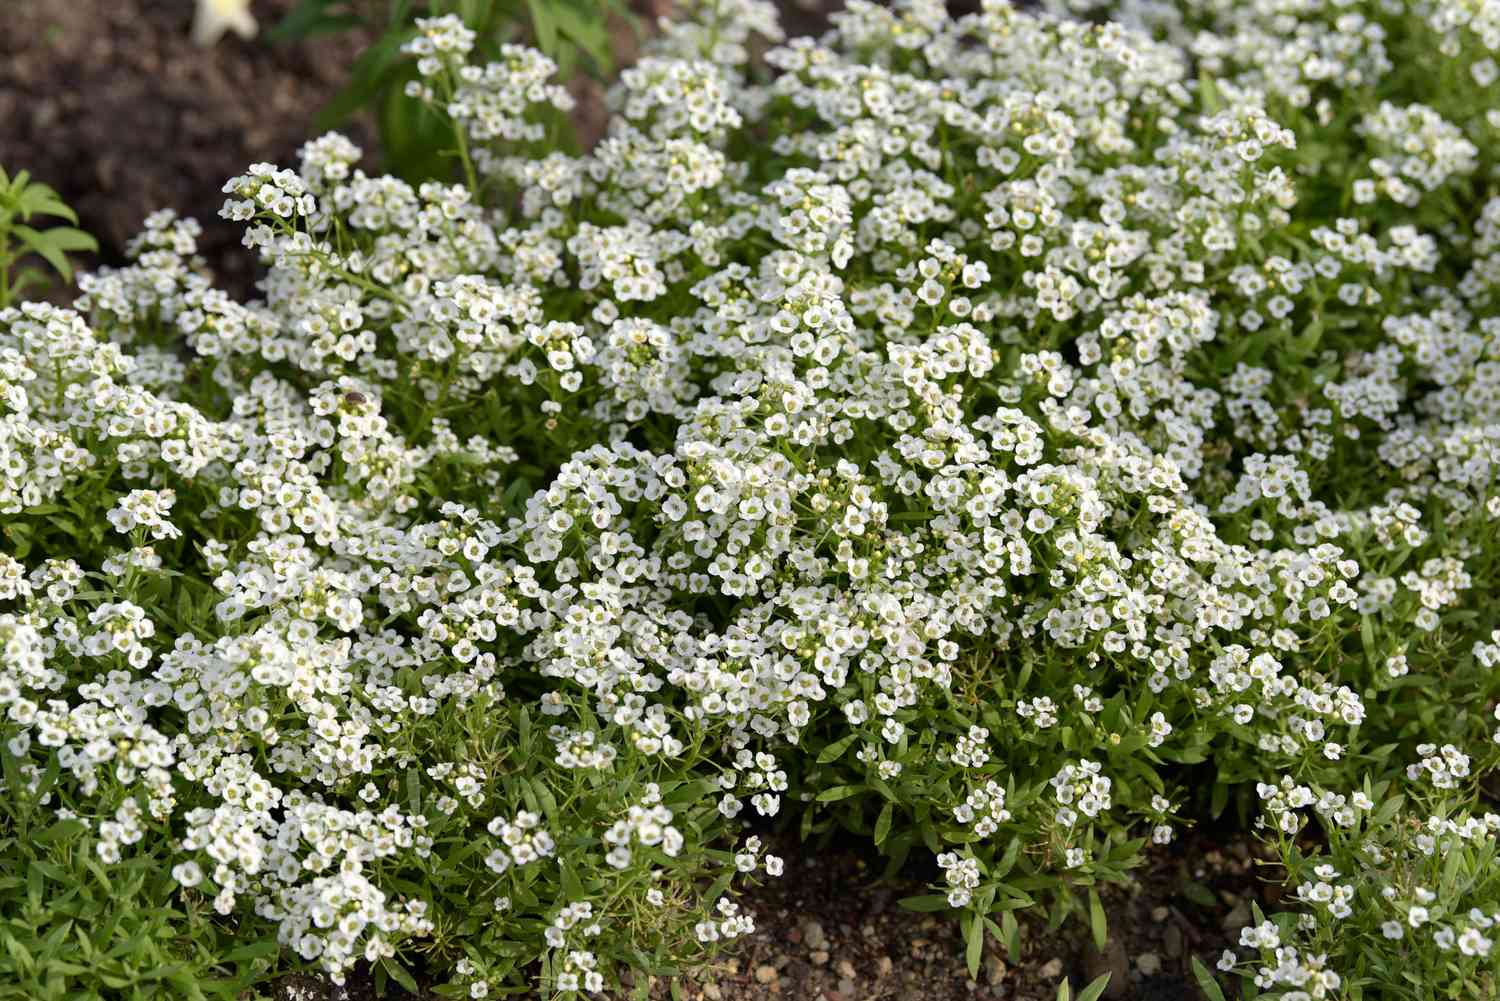 Planta de alyssum dulce con pequeños racimos de flores blancas